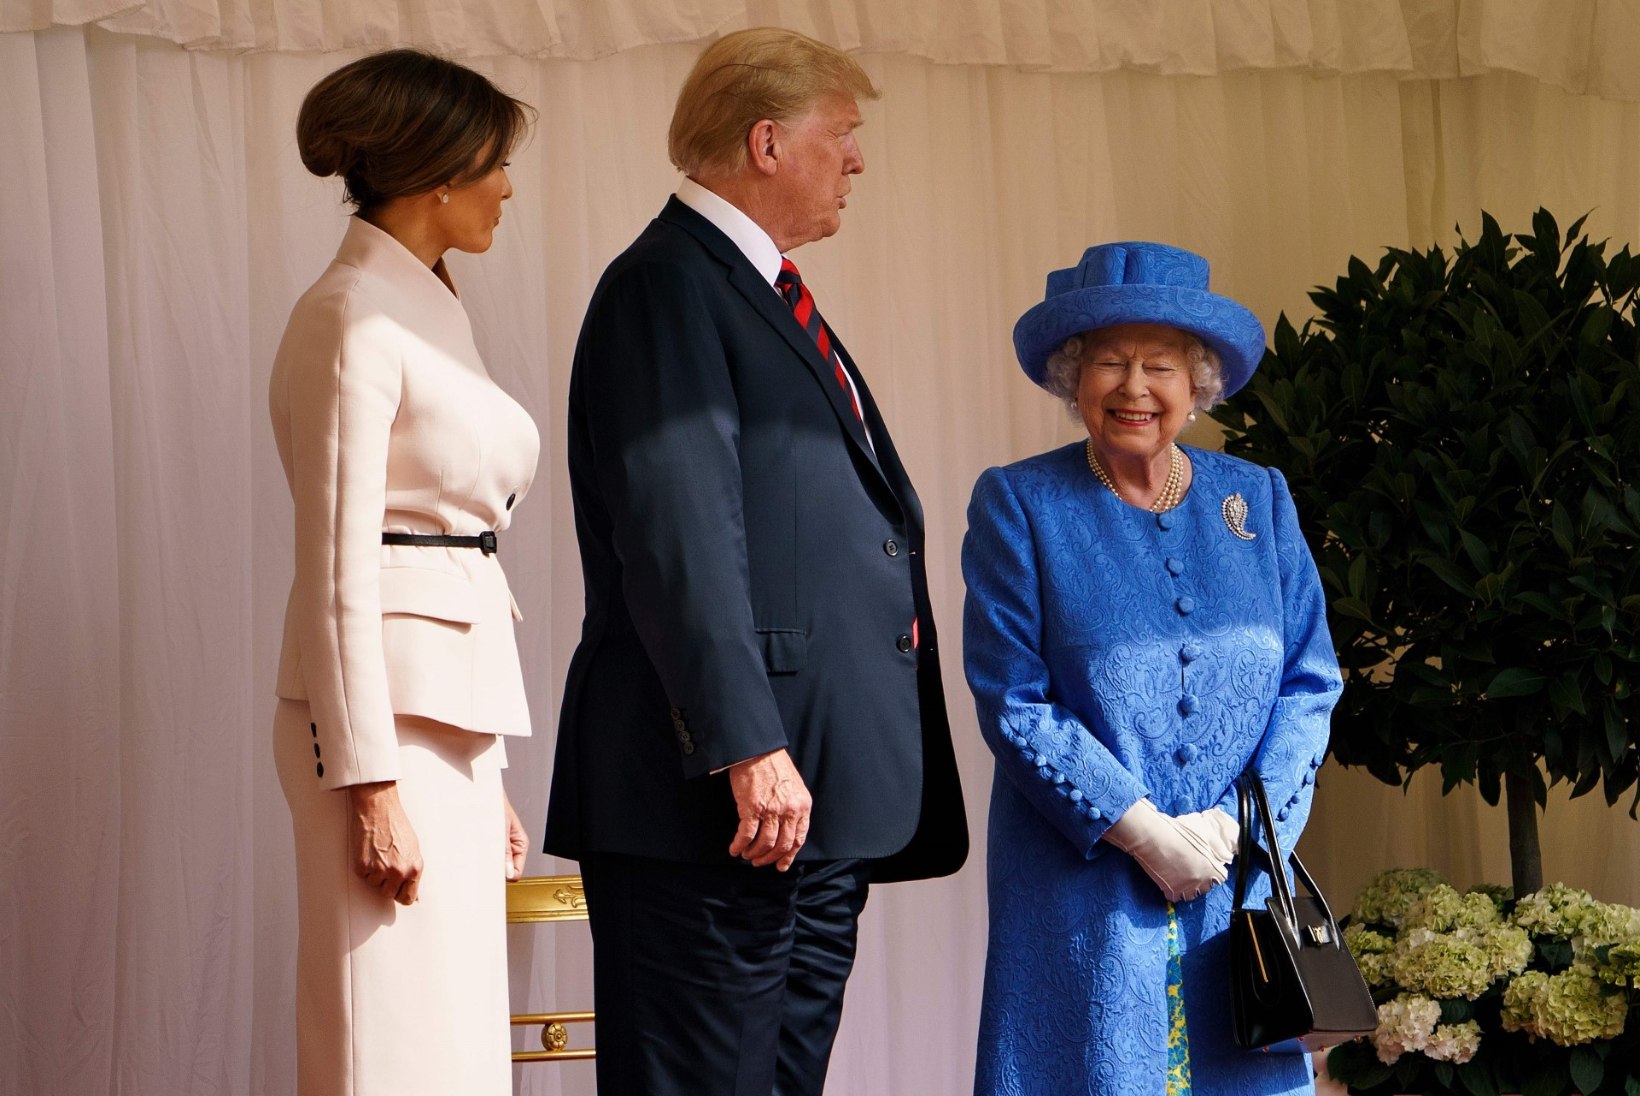 FOTOD | Trump ja Elizabeth II jõid üheskoos kella viie teed